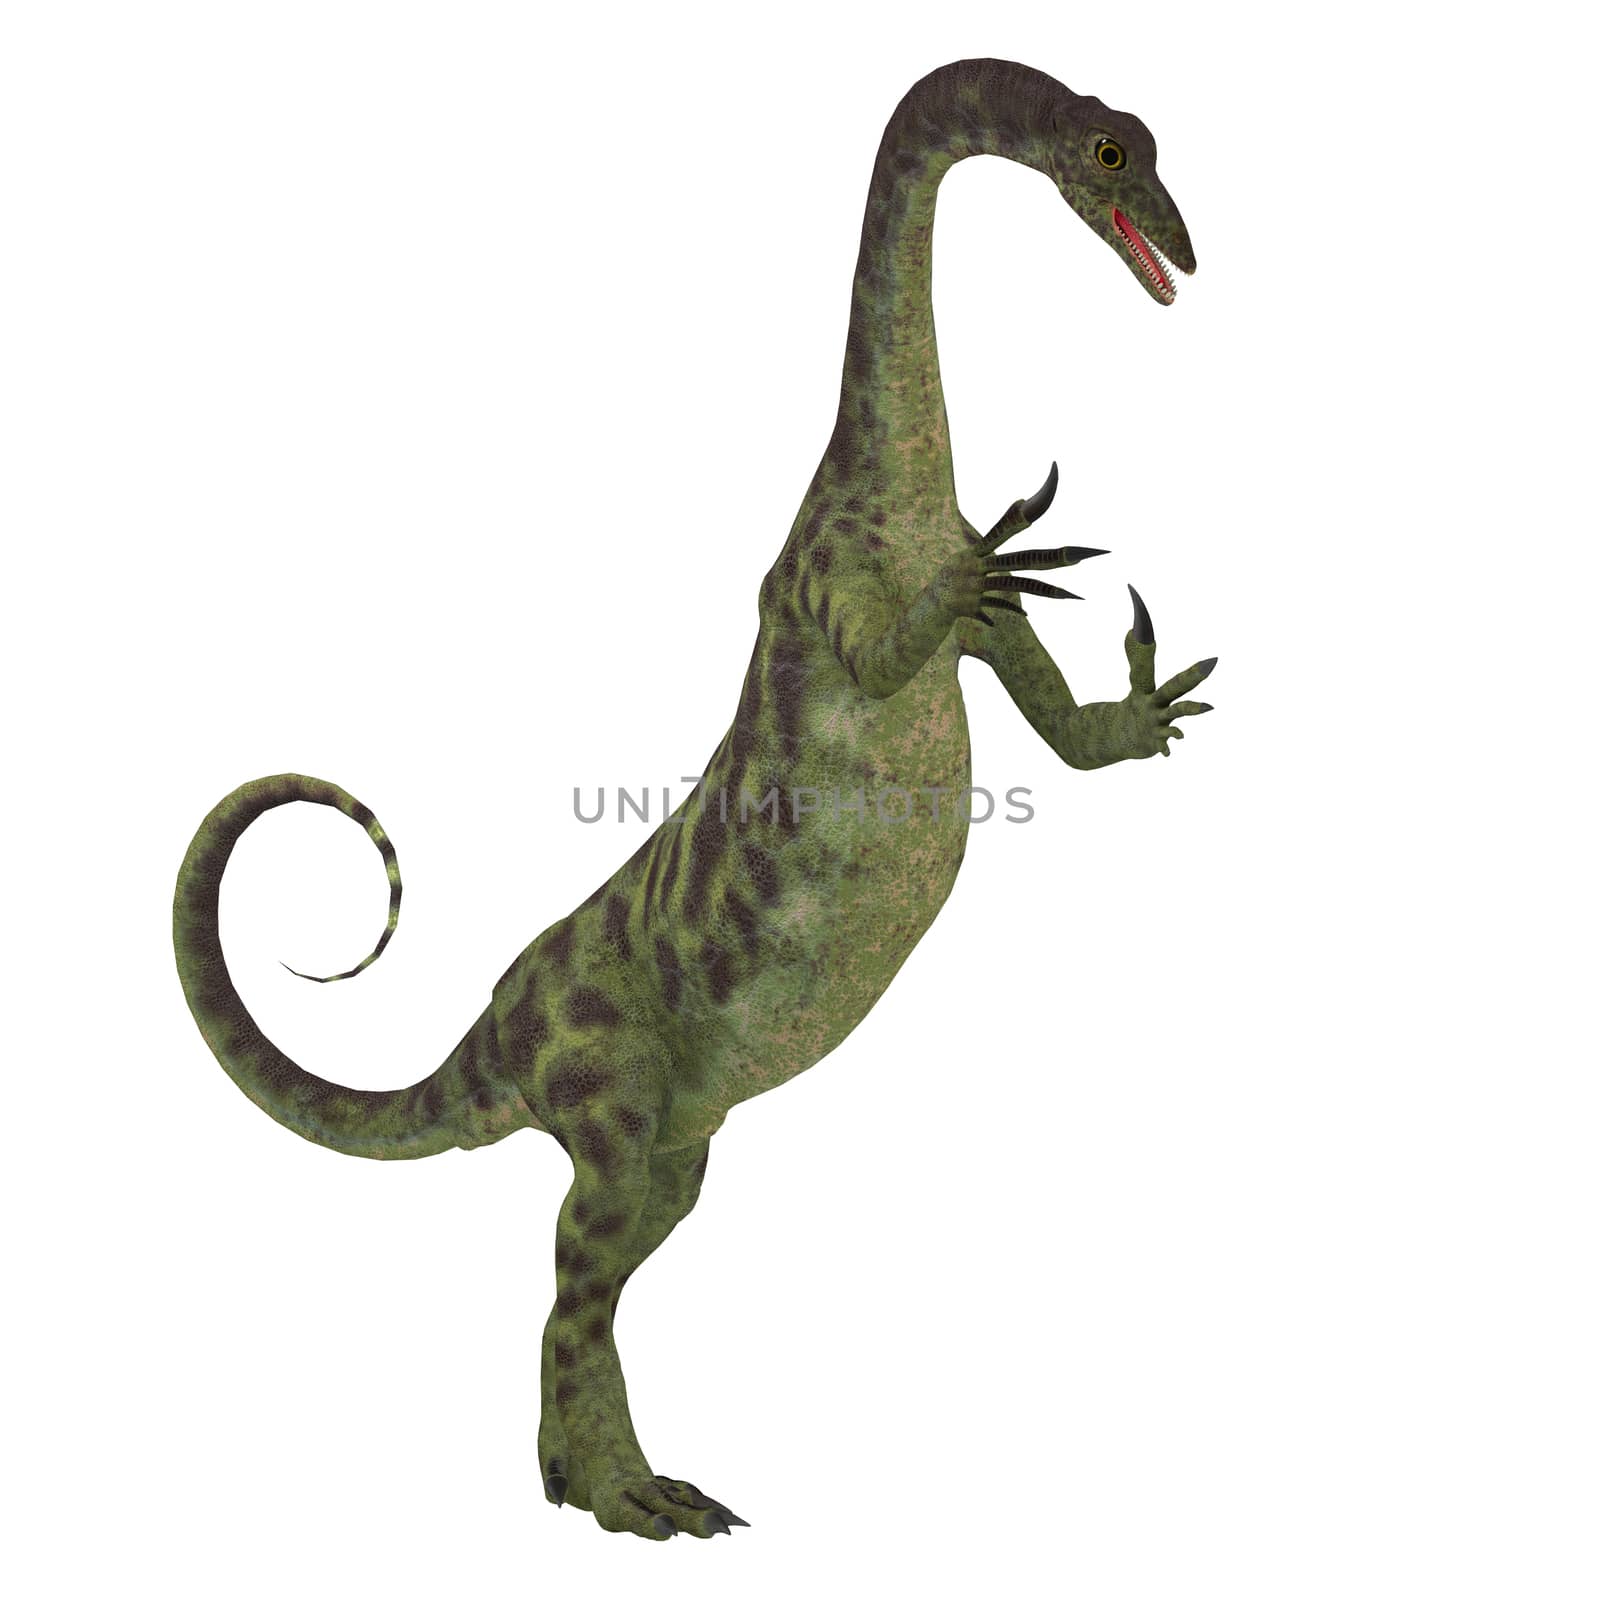 Anchisaurus Dinosaur on White by Catmando